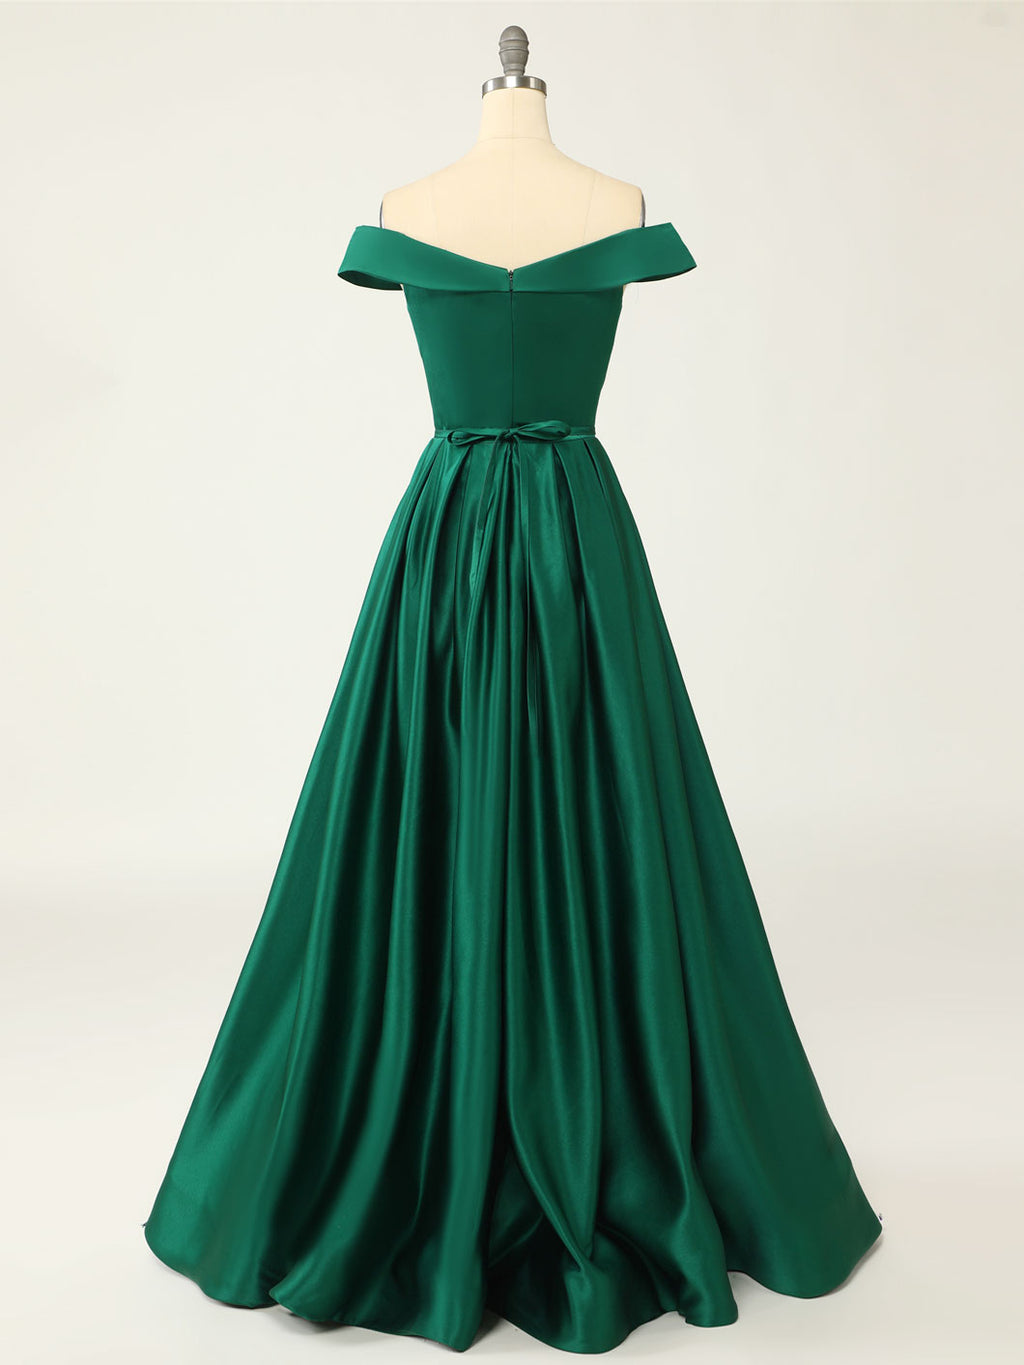 A-Line Green Off Shoulder Long Prom Dresses, Green Formal Evening Dresses